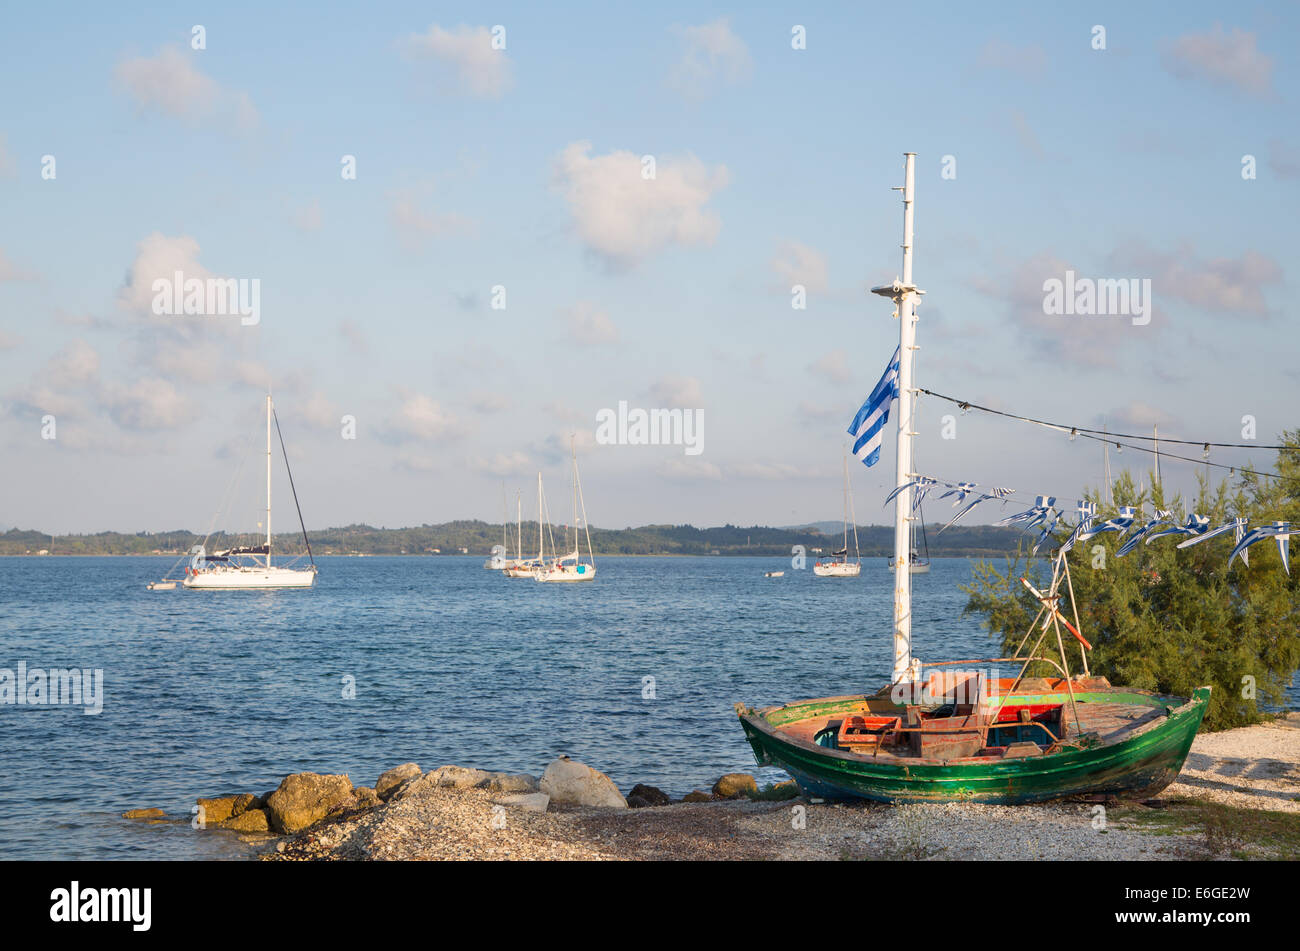 Sehenswürdigkeiten in Griechenland: traditionelle Fischerboote auf den griechischen Inseln. Stockfoto